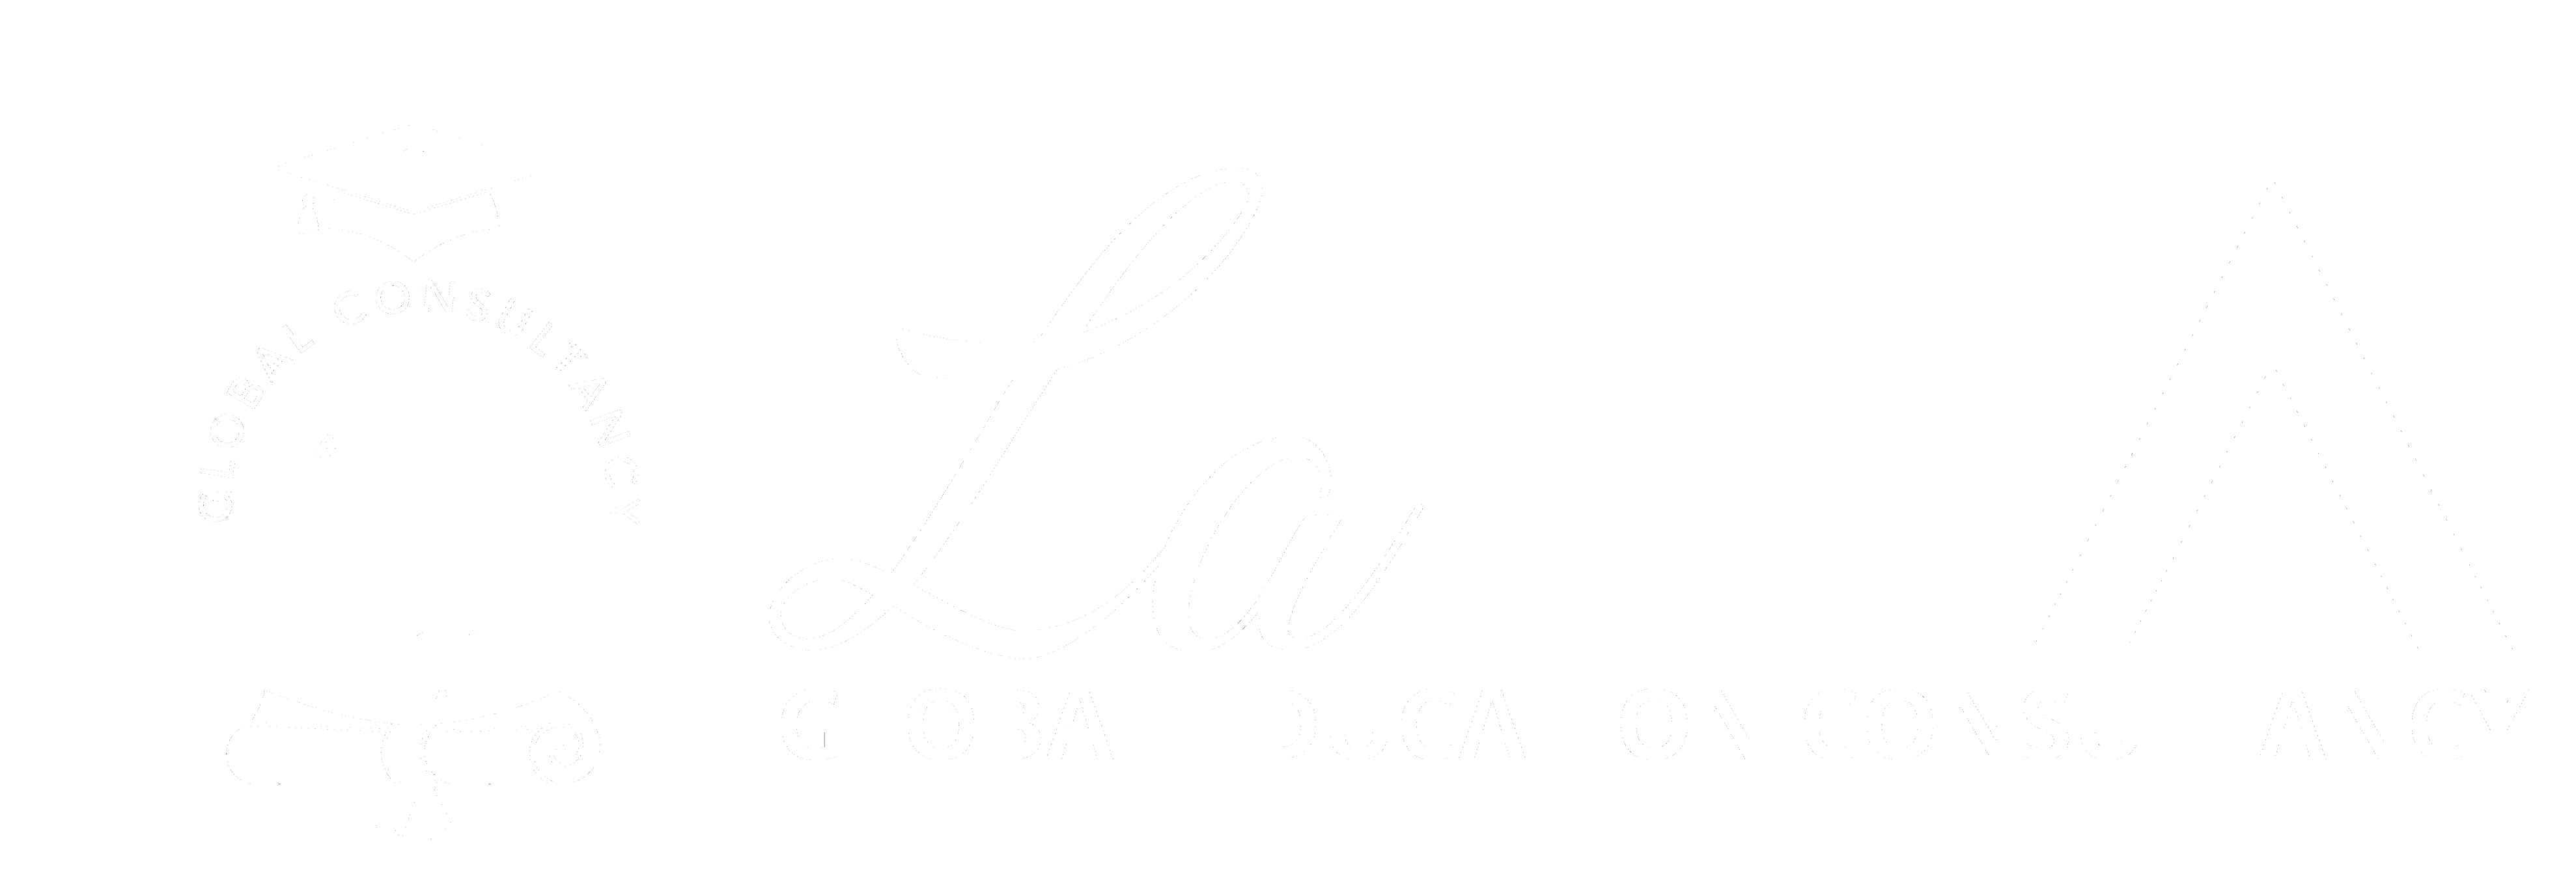 Latia Consultancy - Abroad Studies